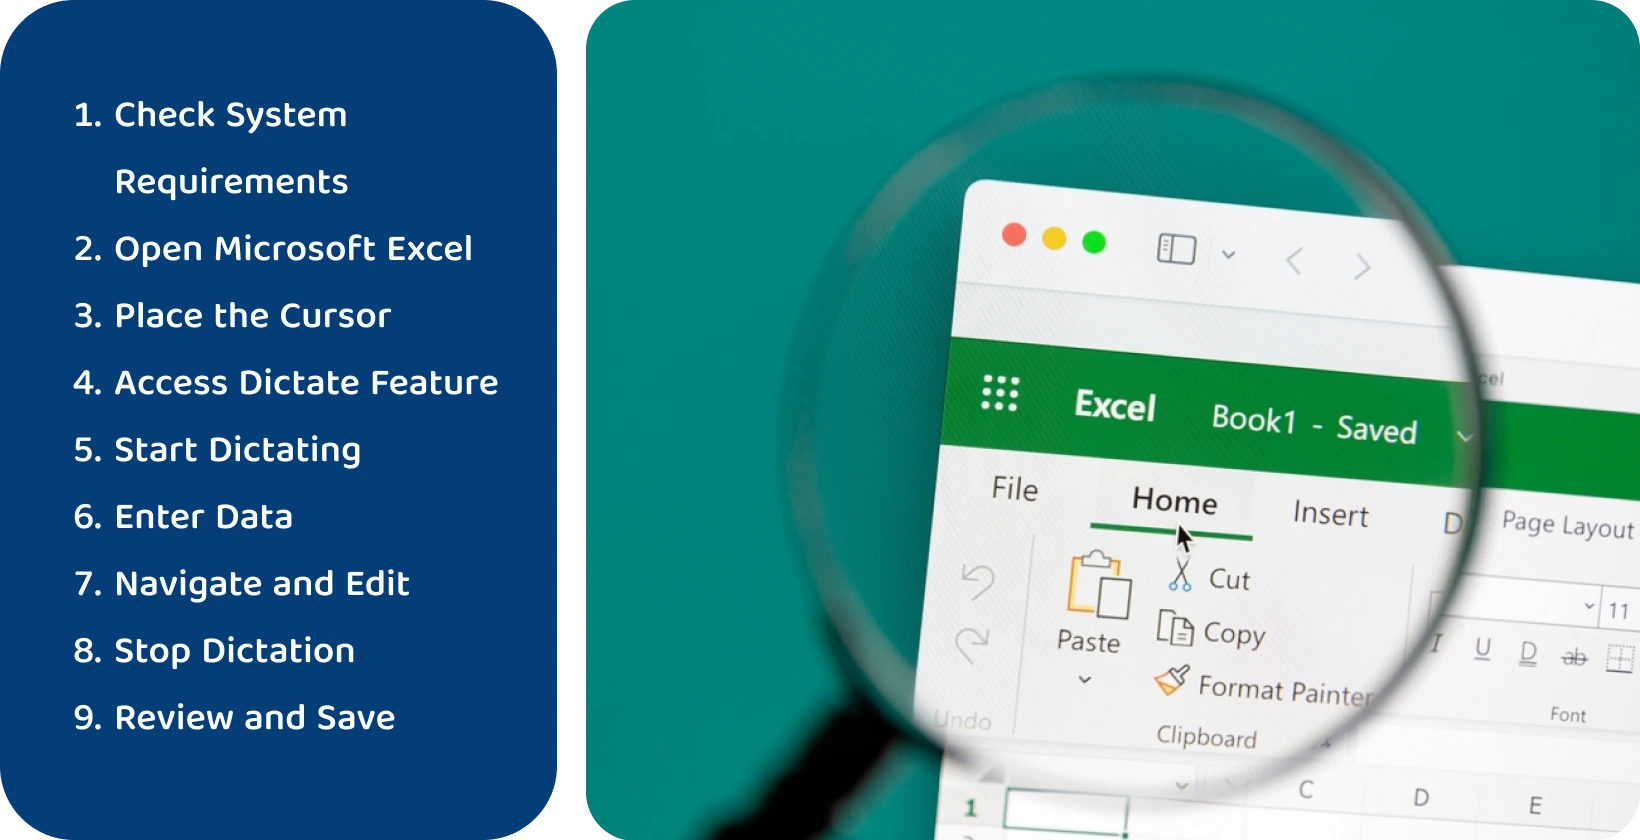 Използвайте функцията диктат в Excel, за да транскрибирате речта в текст ефективно, както е показано чрез увеличения интерфейс.